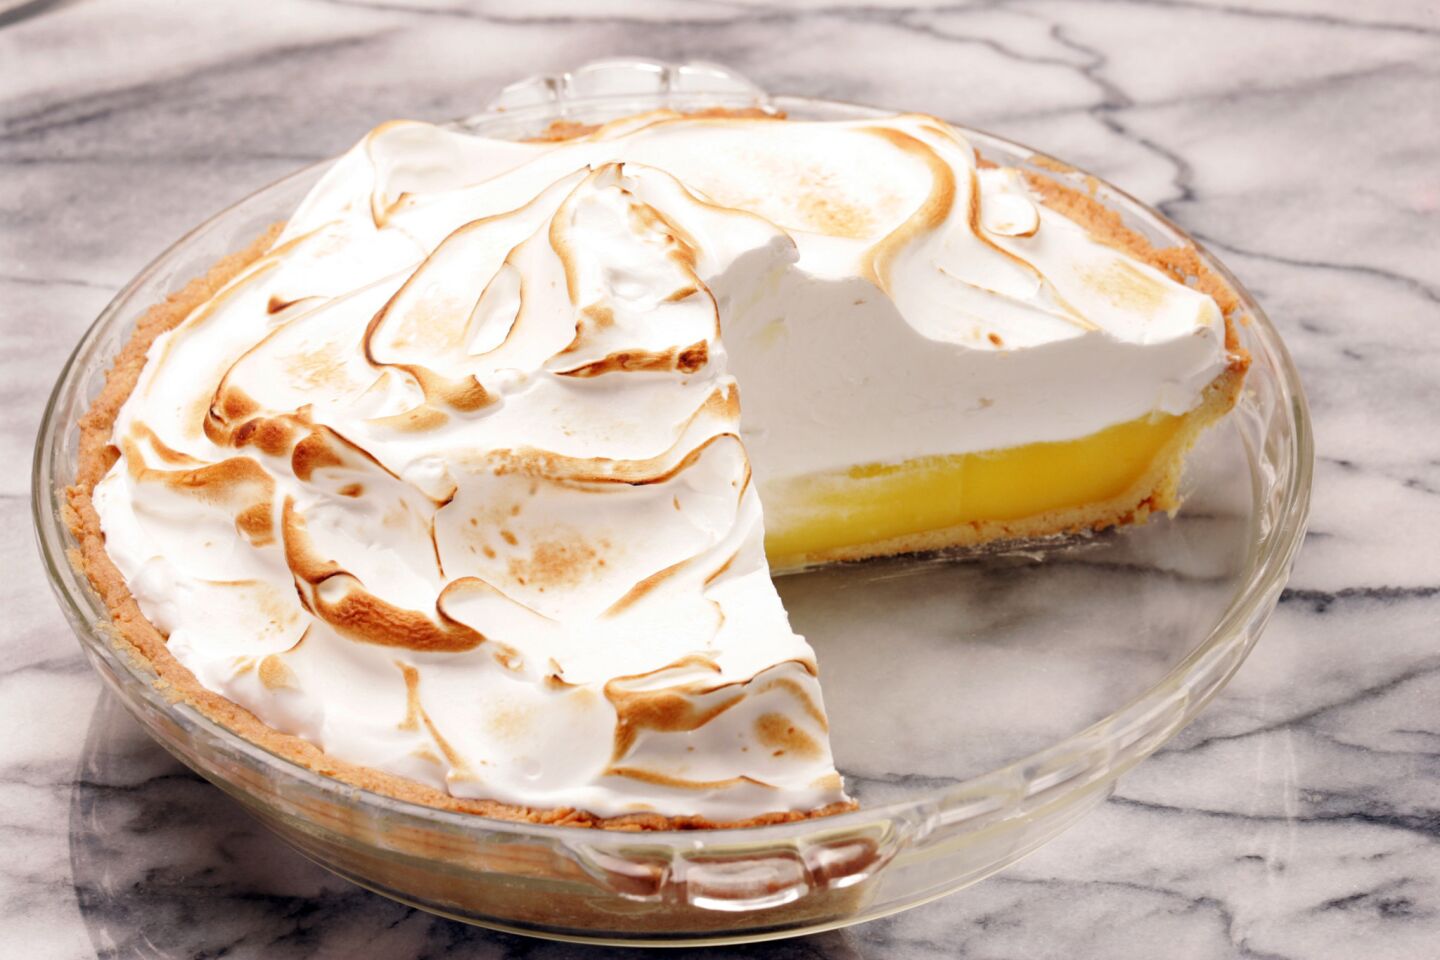 Lemon pie with Italian meringue